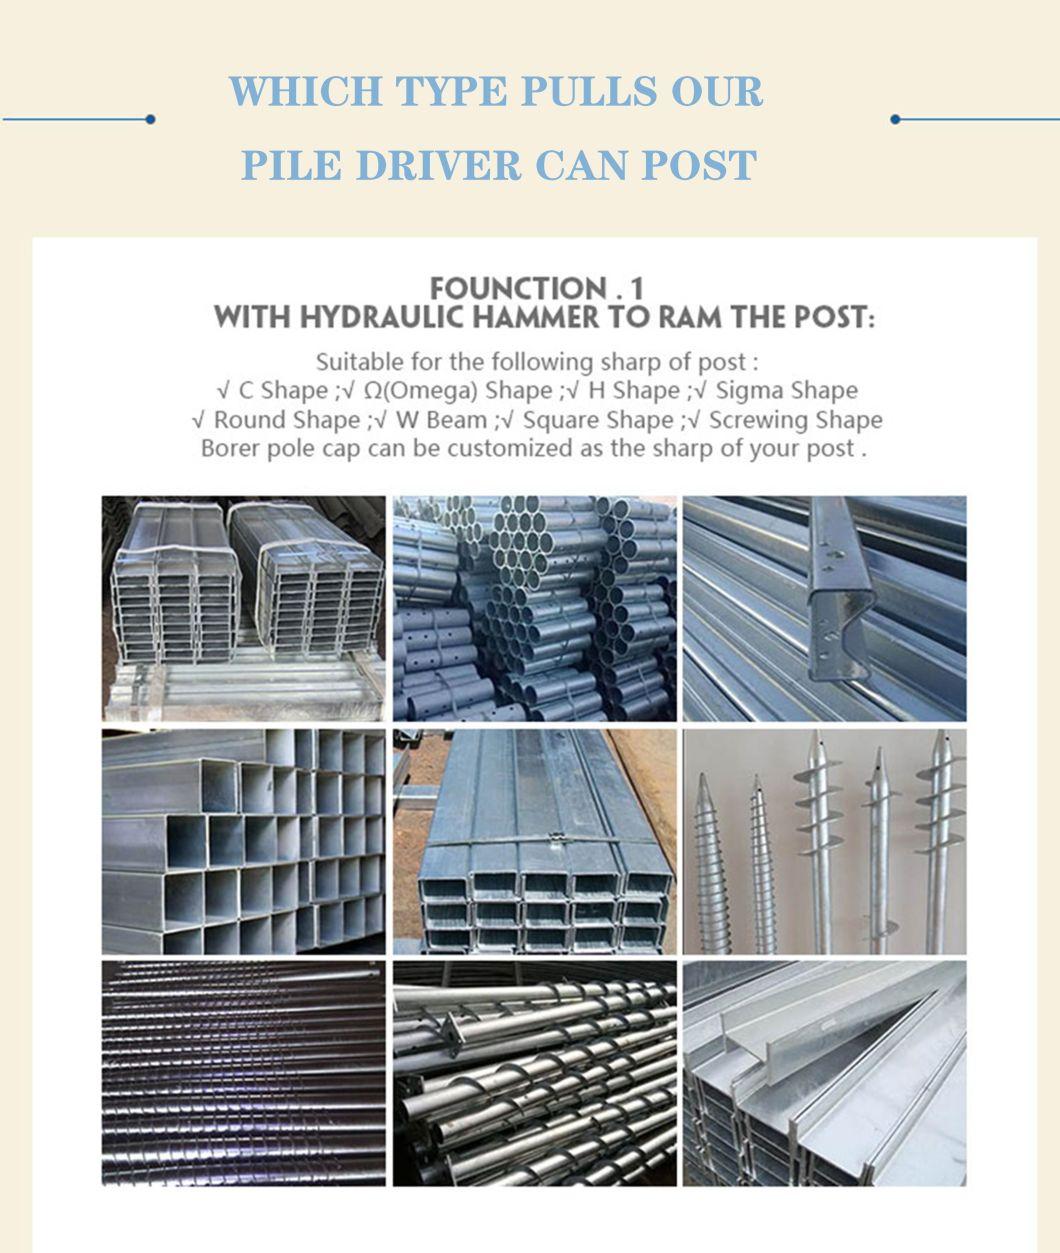 Pole Erection Equipment Guardrail Post Pile Driver Machine